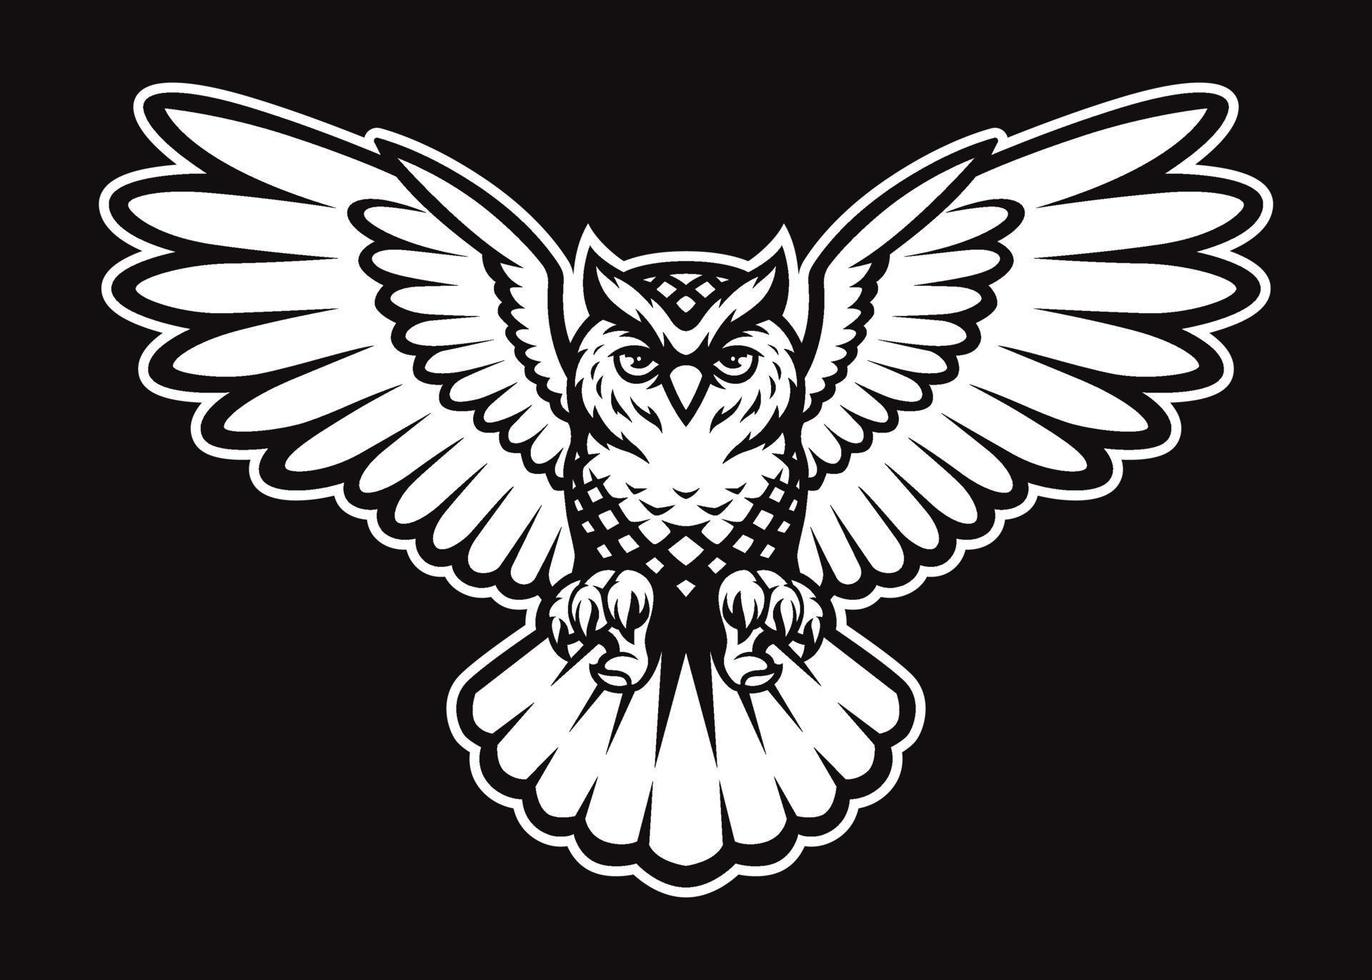 Owl Vector Logo